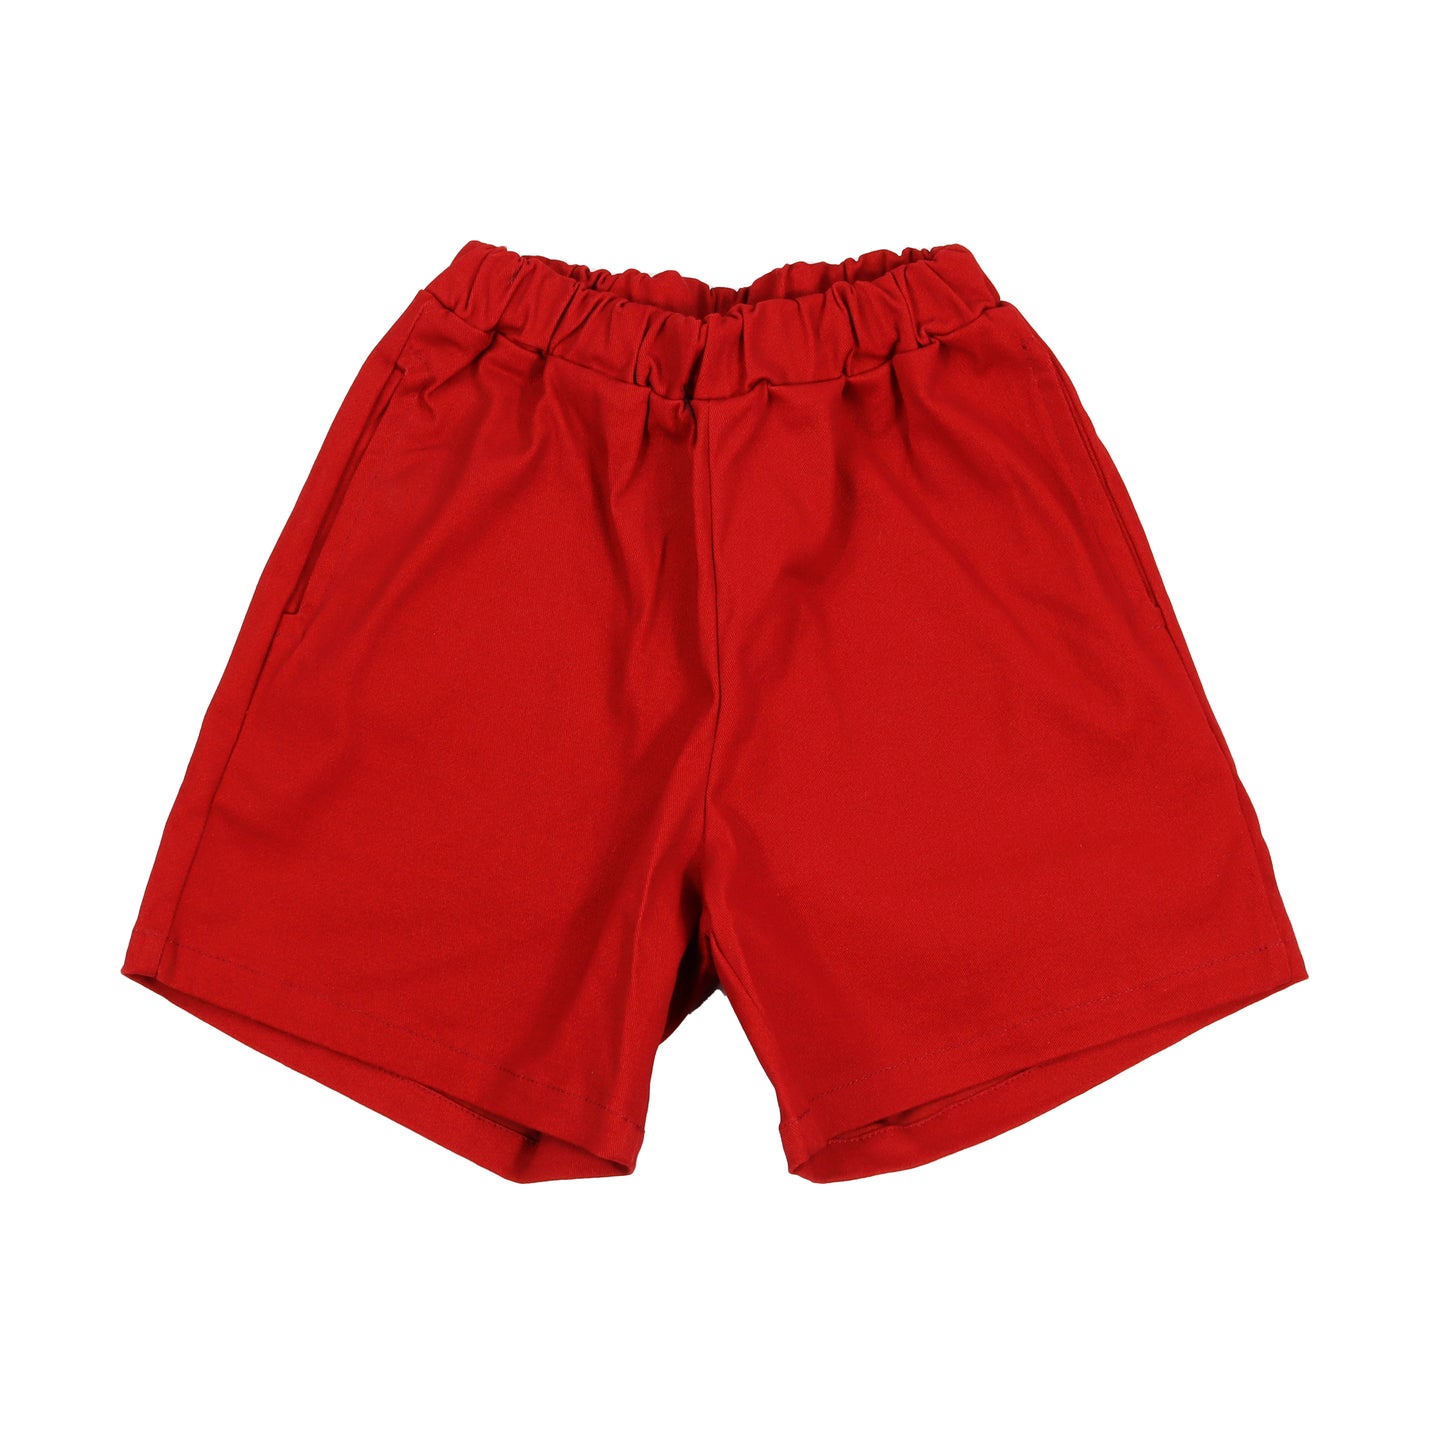 Active Shorts - Red (Past Season)